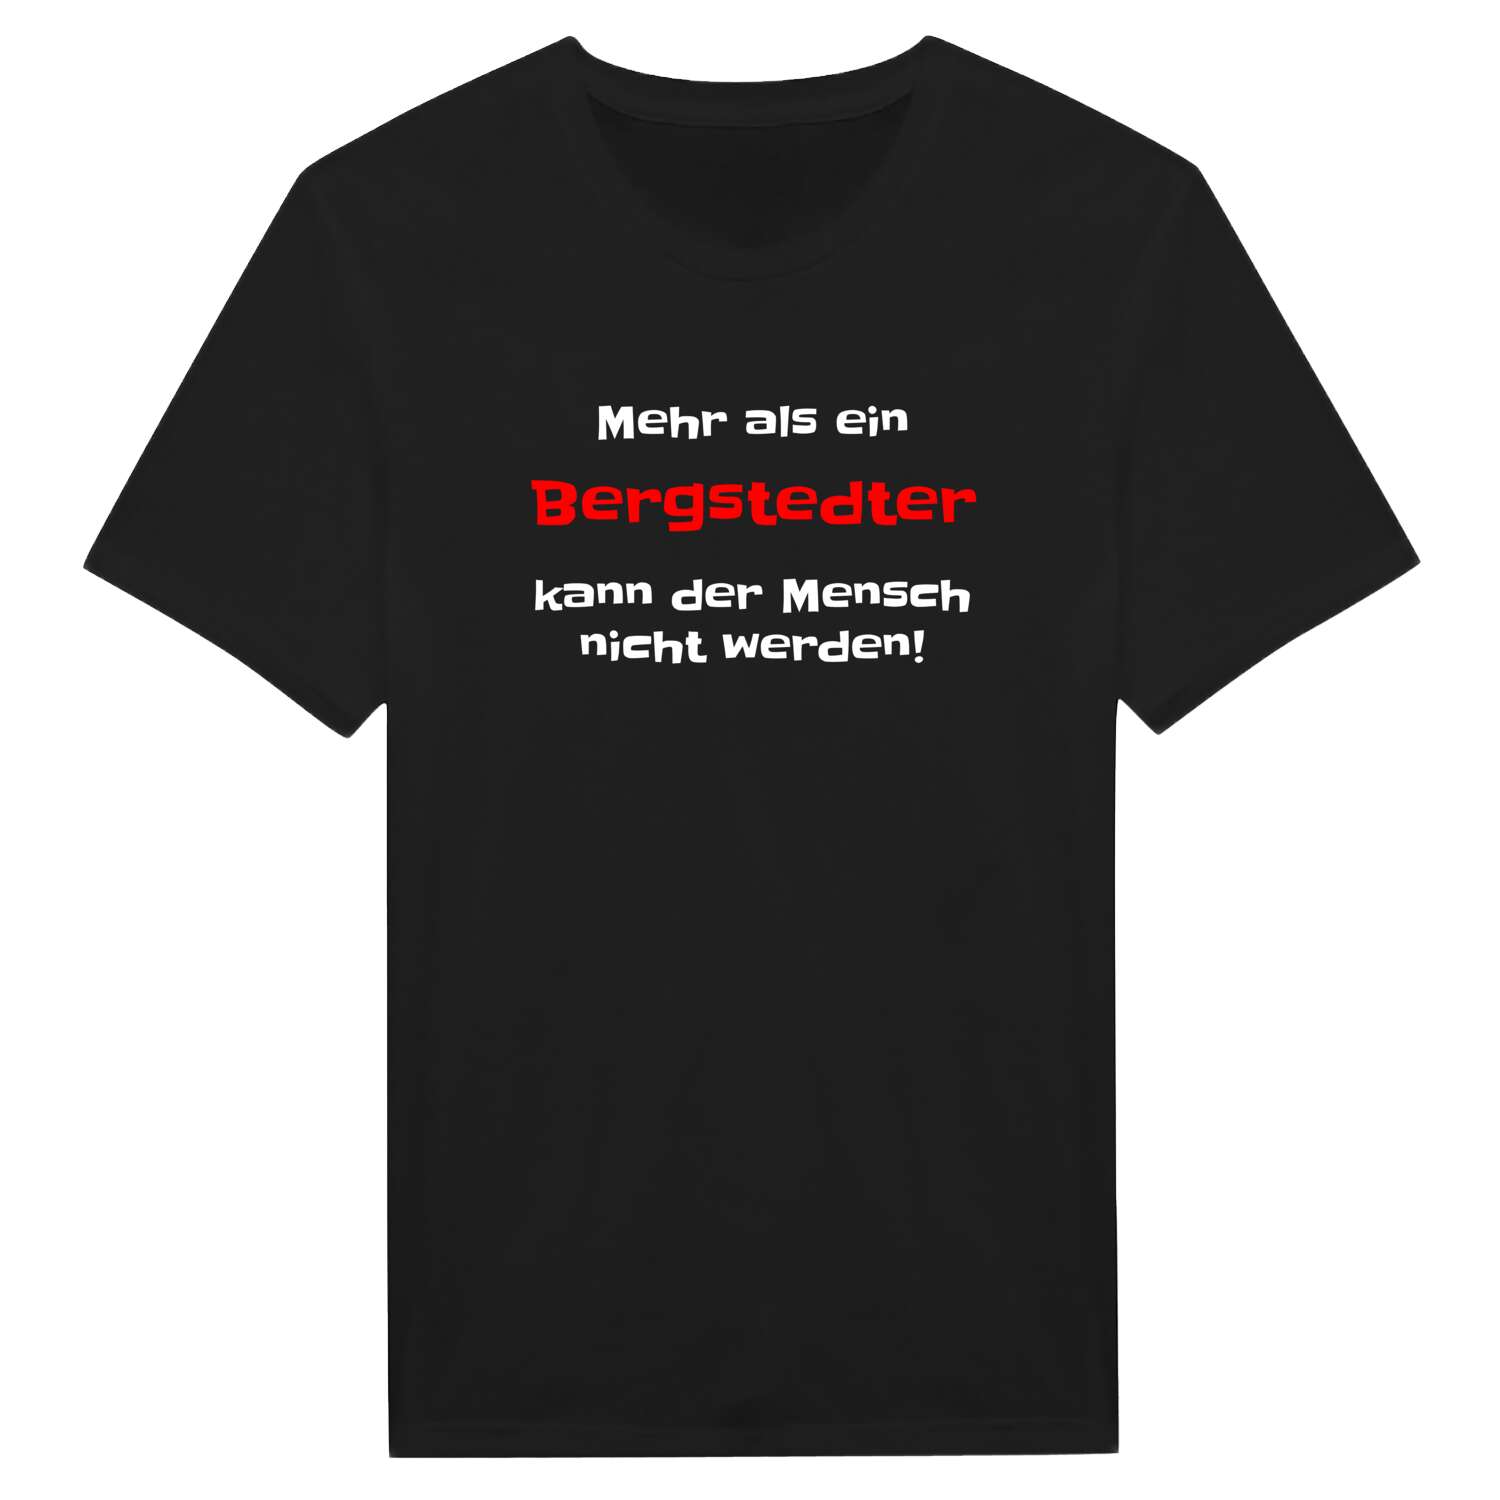 Bergstedt T-Shirt »Mehr als ein«